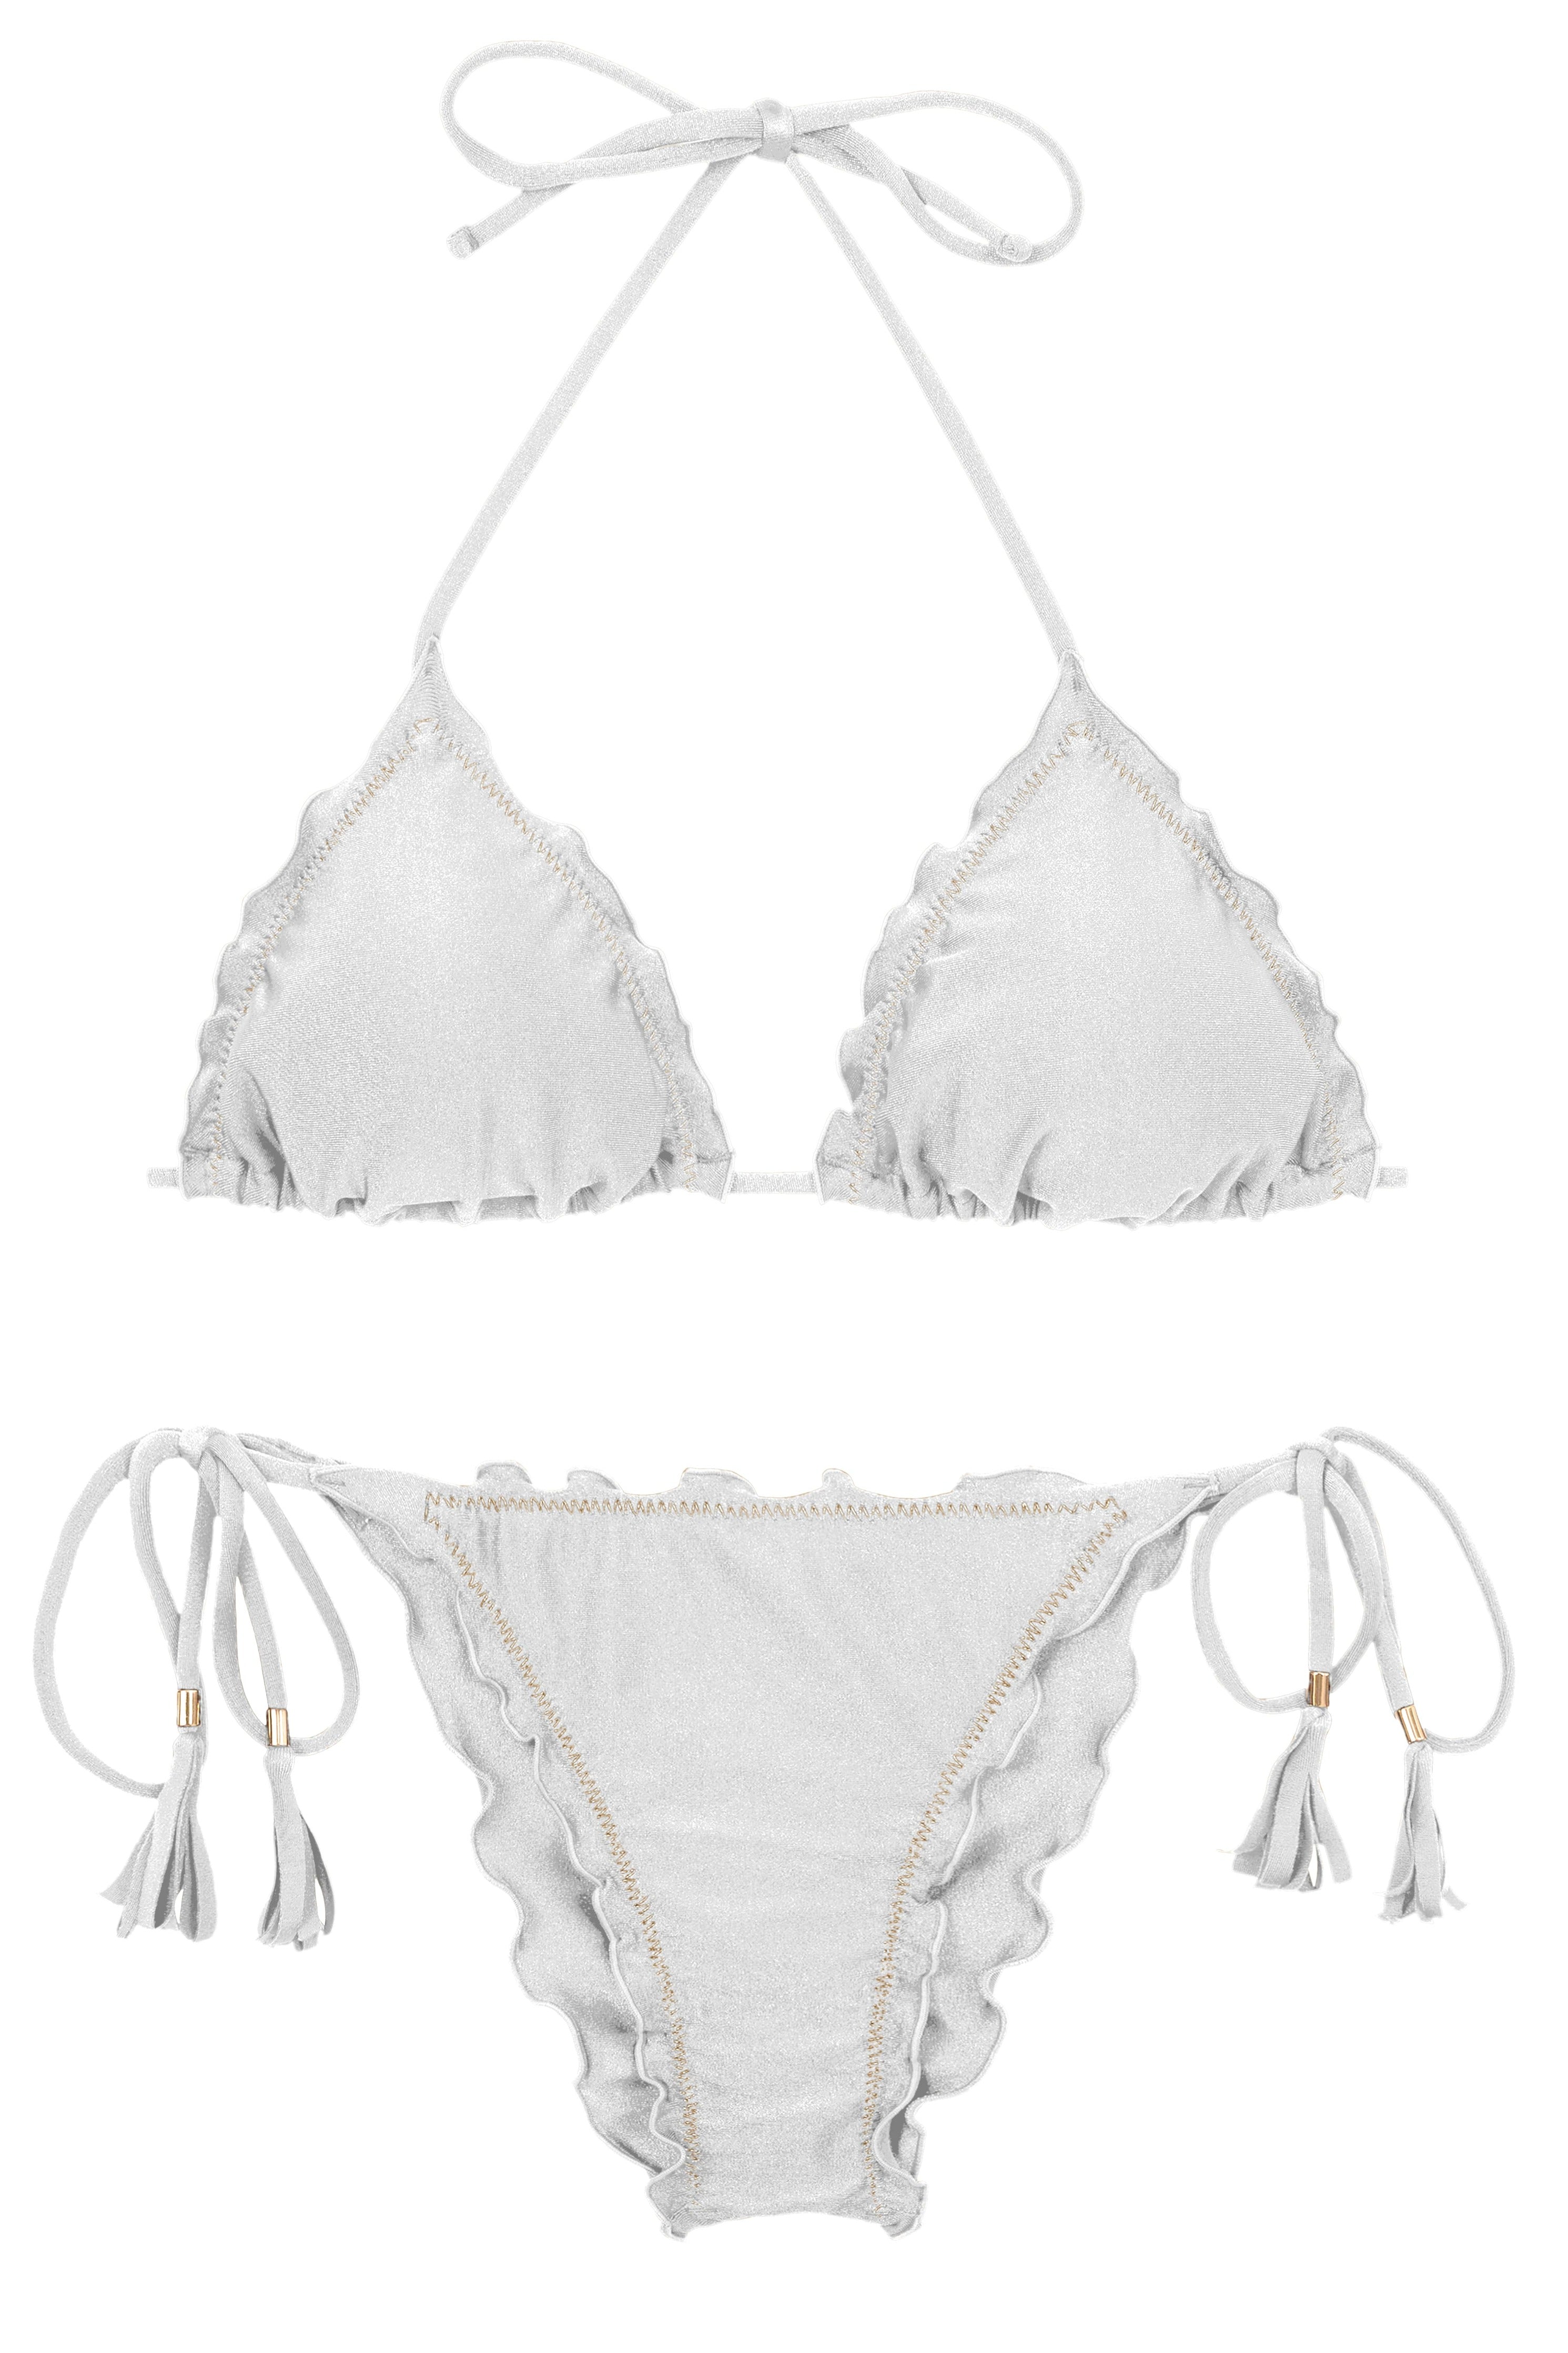 Rio de Sol Bottom Shimmer-White Nice-Fio - Bright Print Swimwear